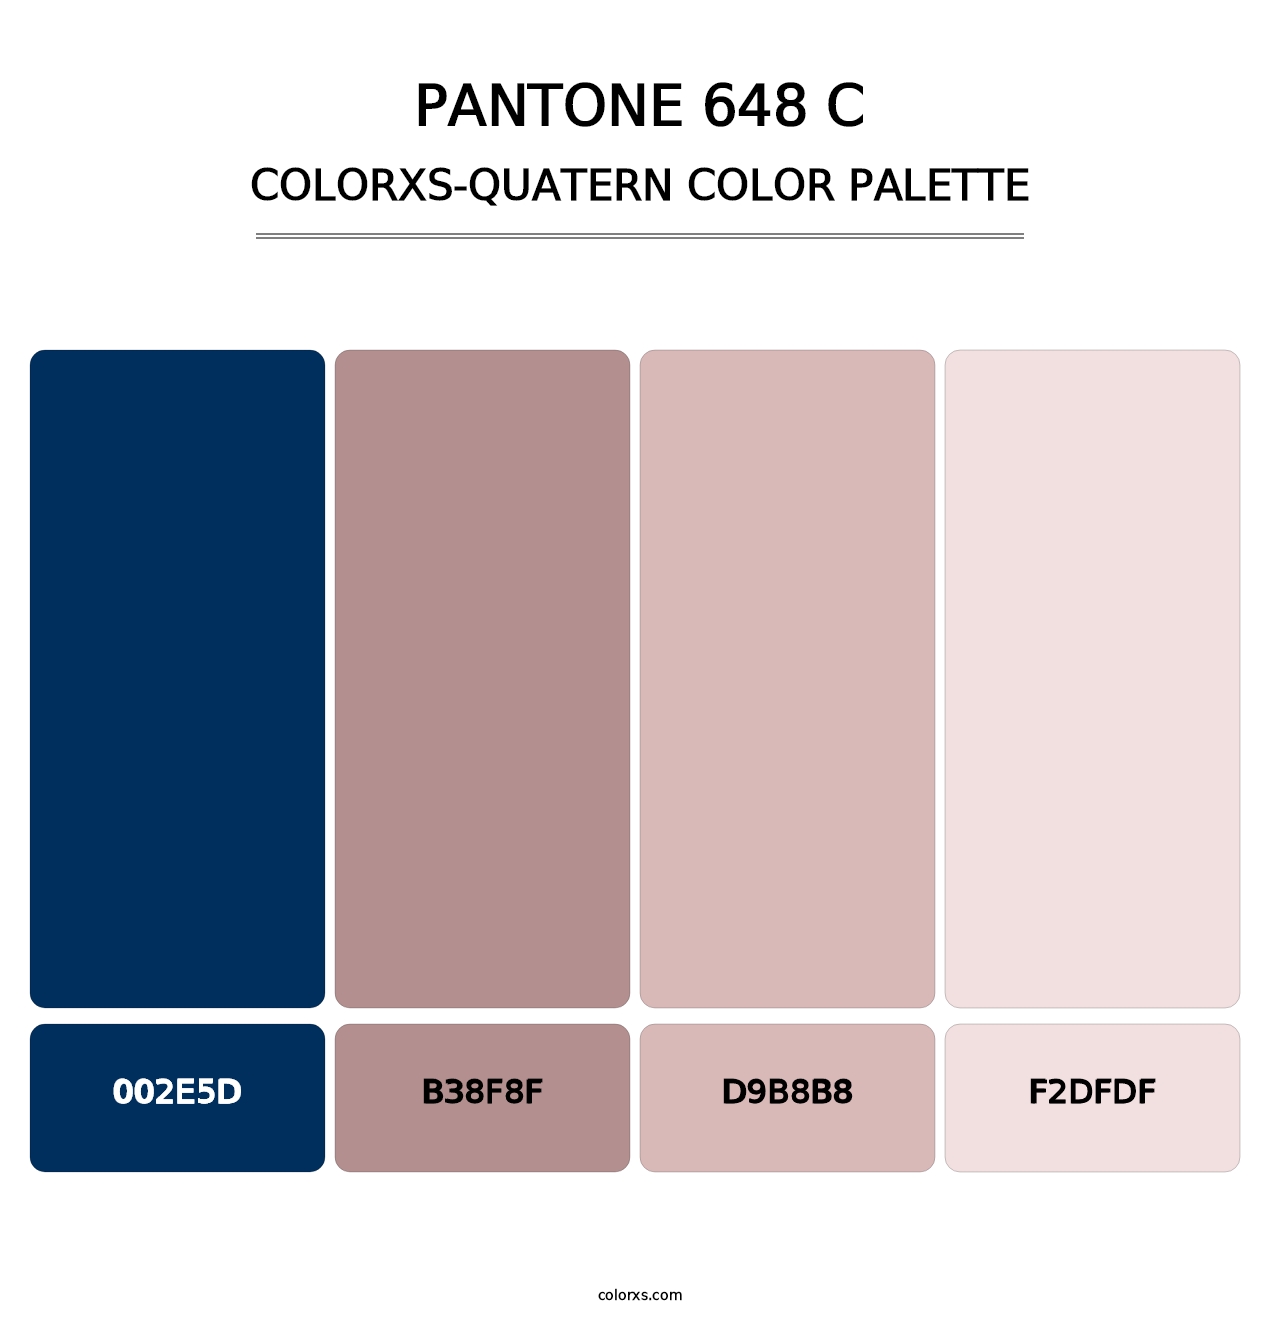 PANTONE 648 C - Colorxs Quatern Palette